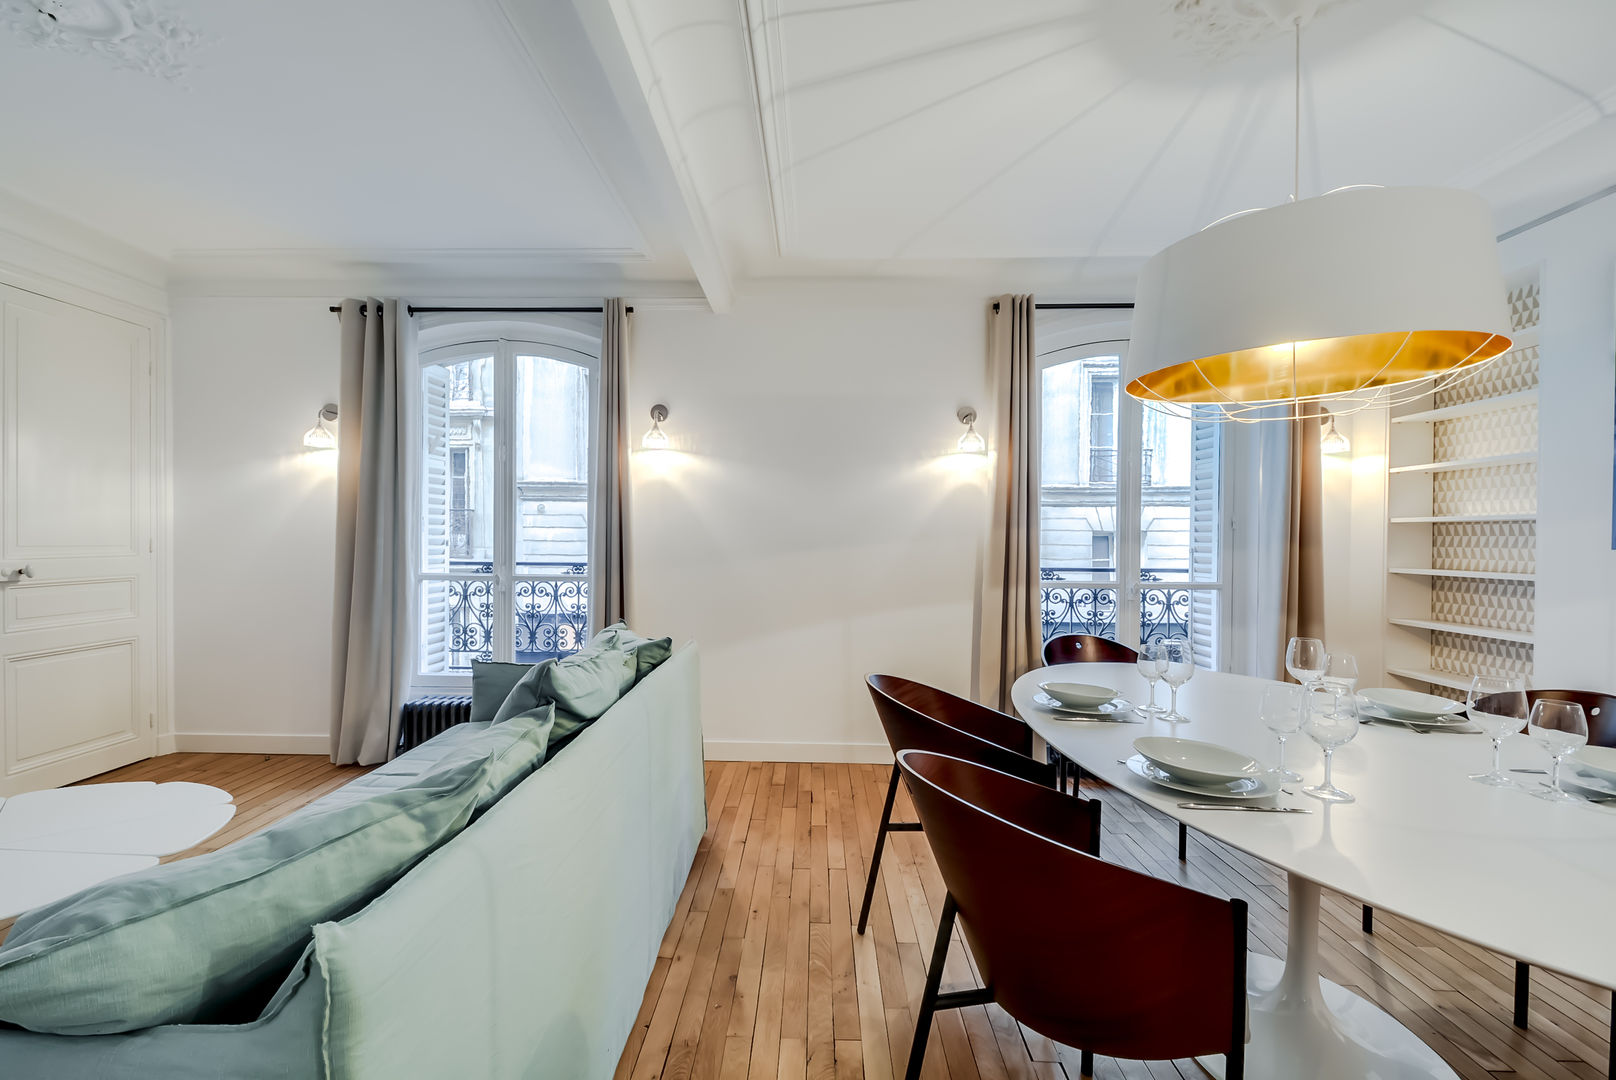 Un Appartement locatif saisonnier au coeur de Paris, ATELIER FB ATELIER FB Salon moderne